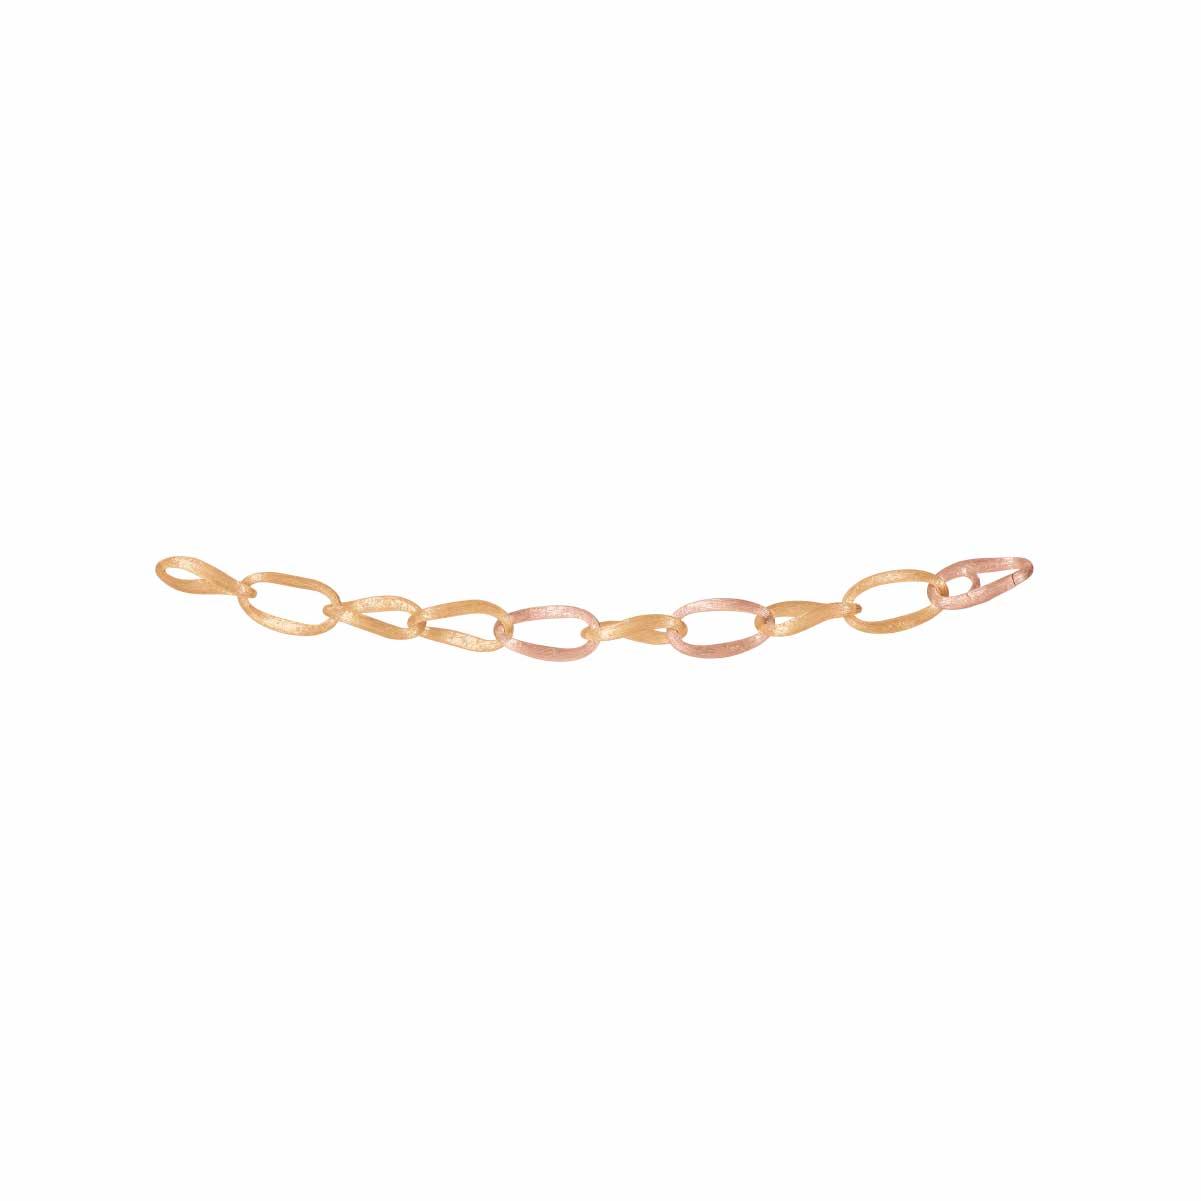 OLE LYNGGAARD COPENHAGEN Life Gold, Turquoise and Cord Bracelet for Men |  Cord bracelets, Turquoise, Fine jewelry bracelets